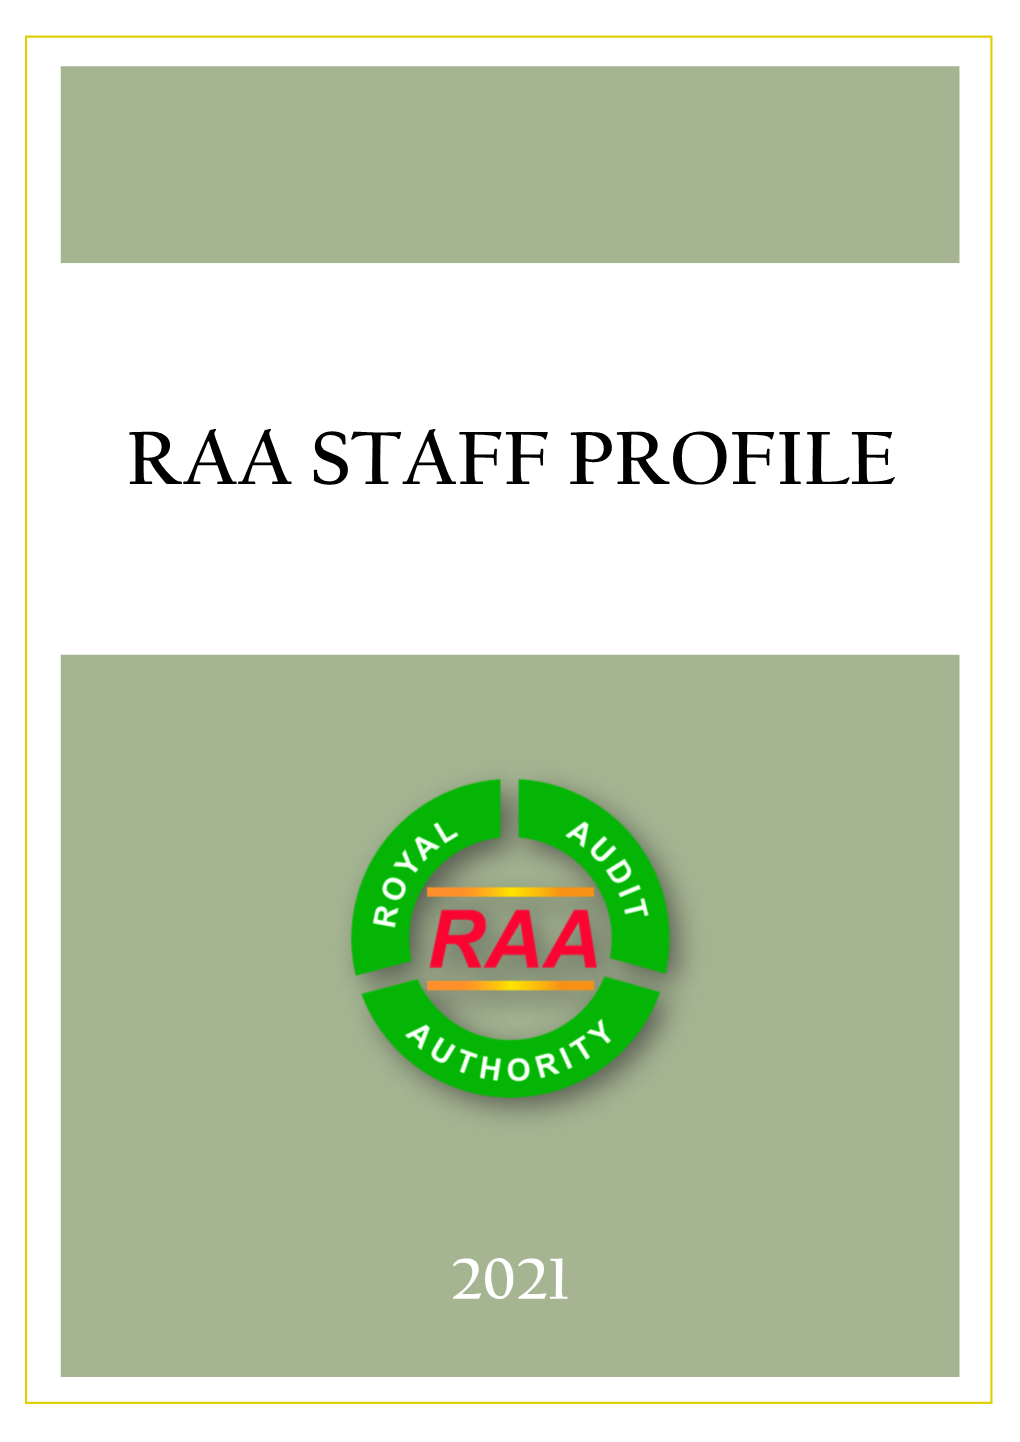 Raa Staff Profile